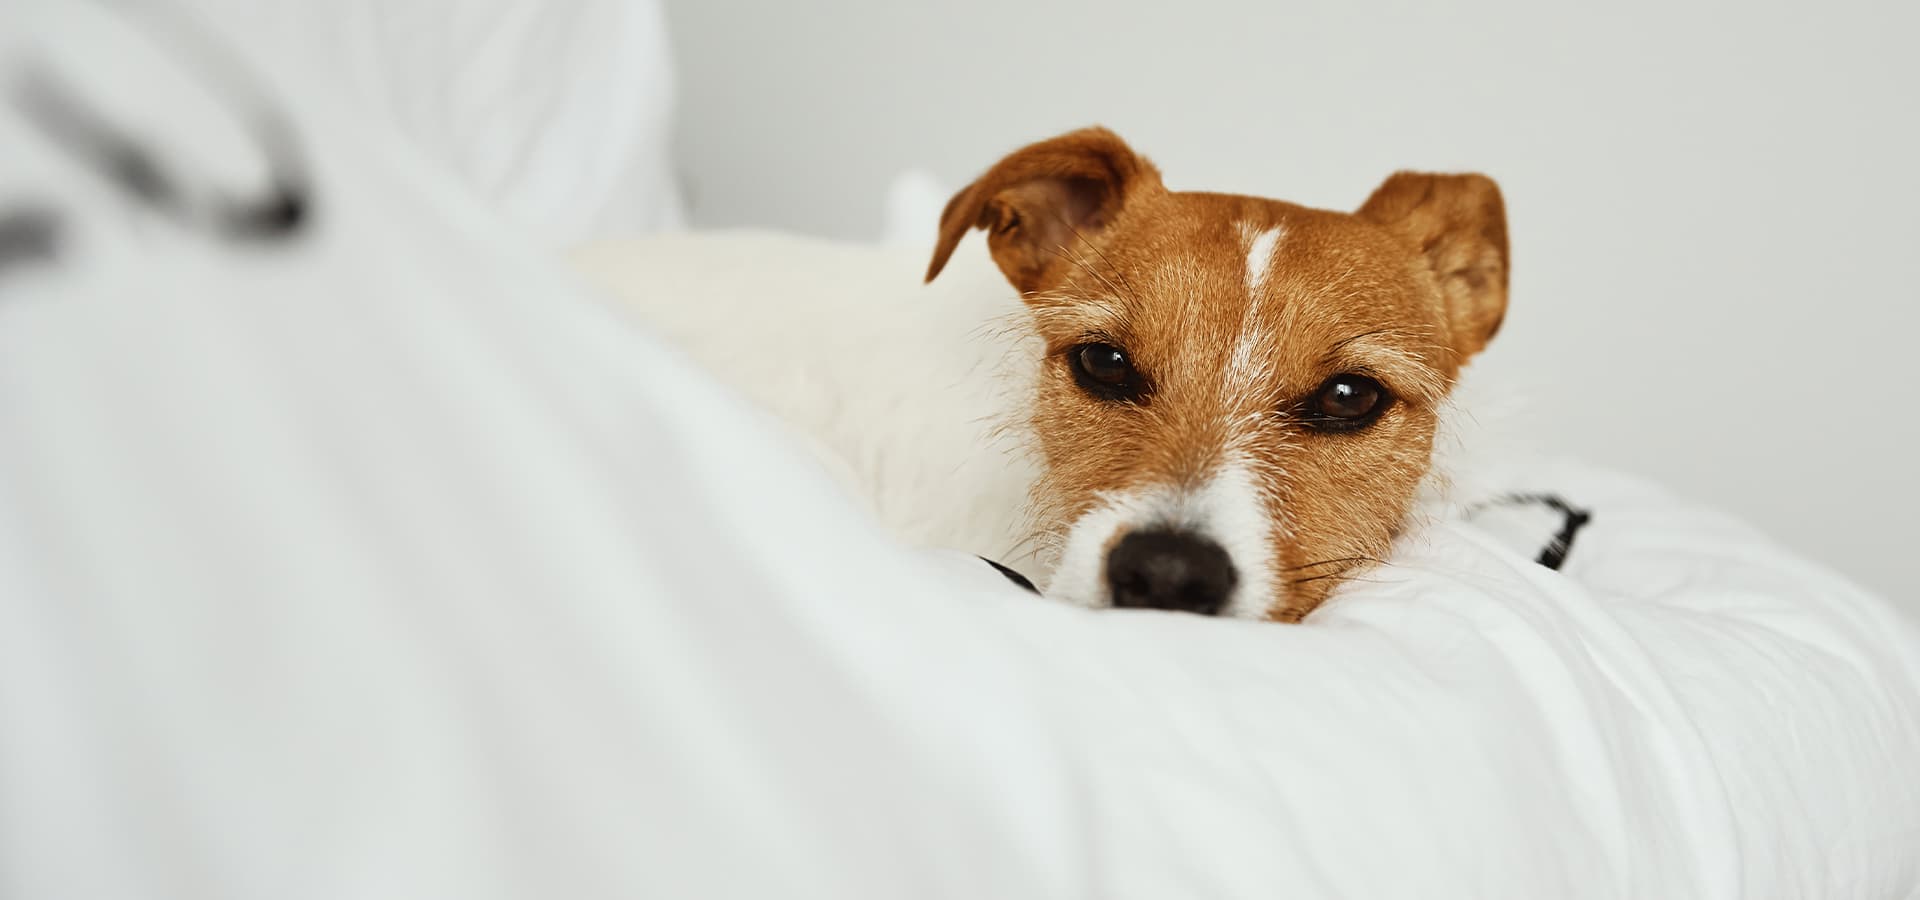 Jack-Russel-Terrier liegt auf einer weißen Decke